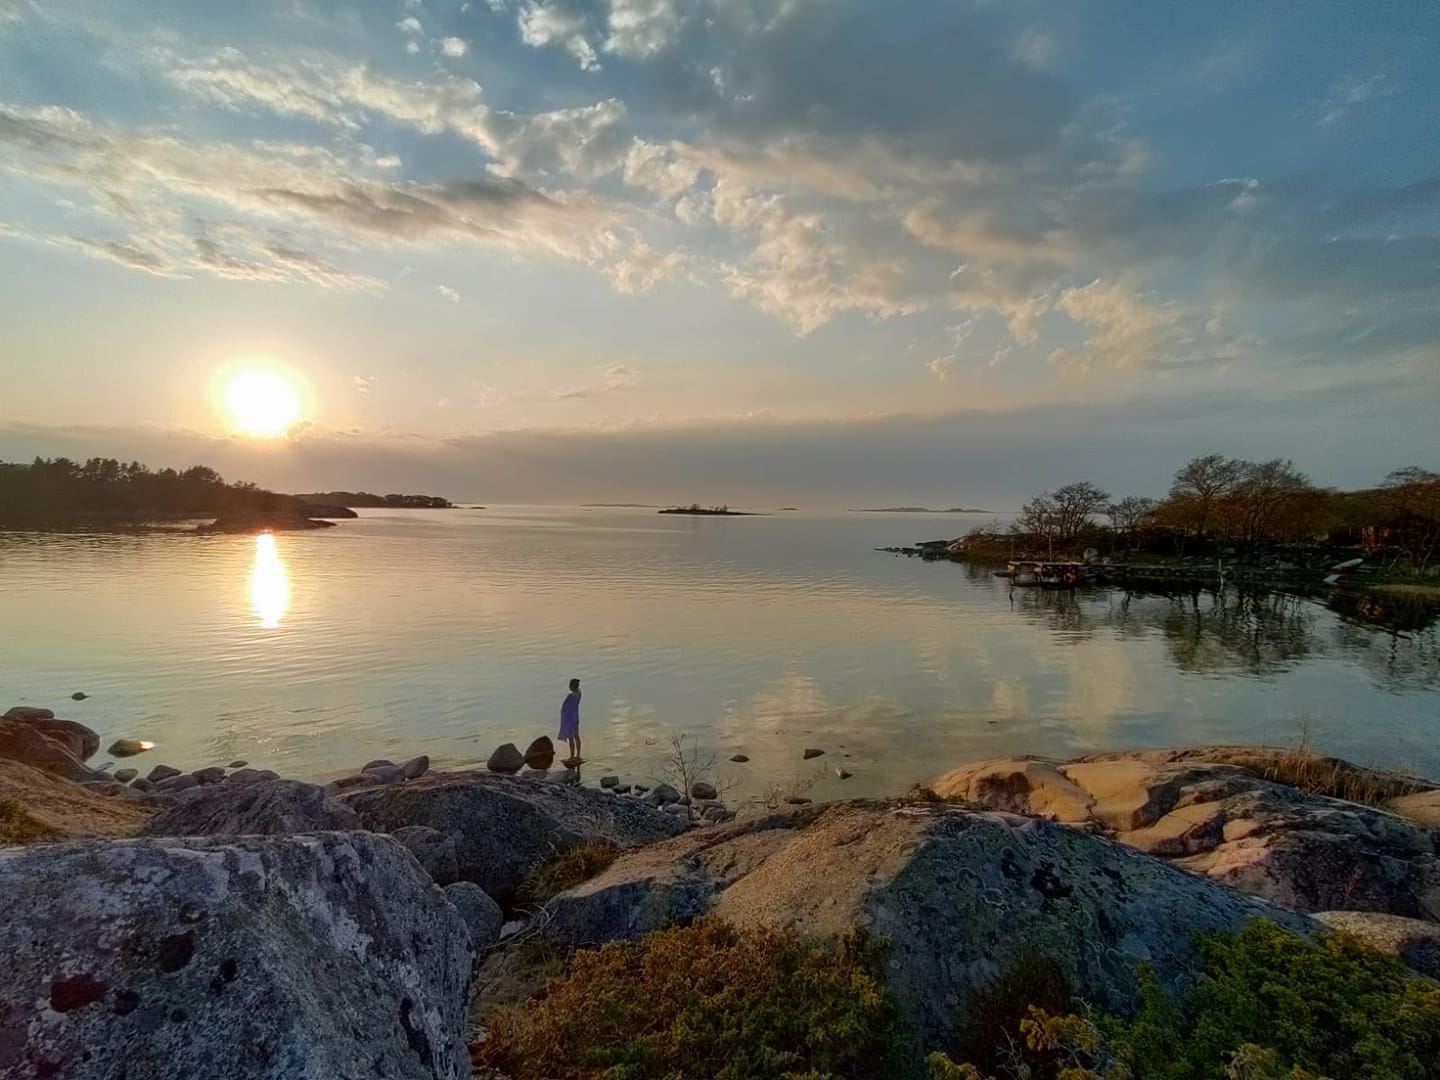 Työnohjauskolutuksen opiskelijan kuva. Maisemassa kaunis suomalainen järvimaisema, jossa henkilö rannalla.